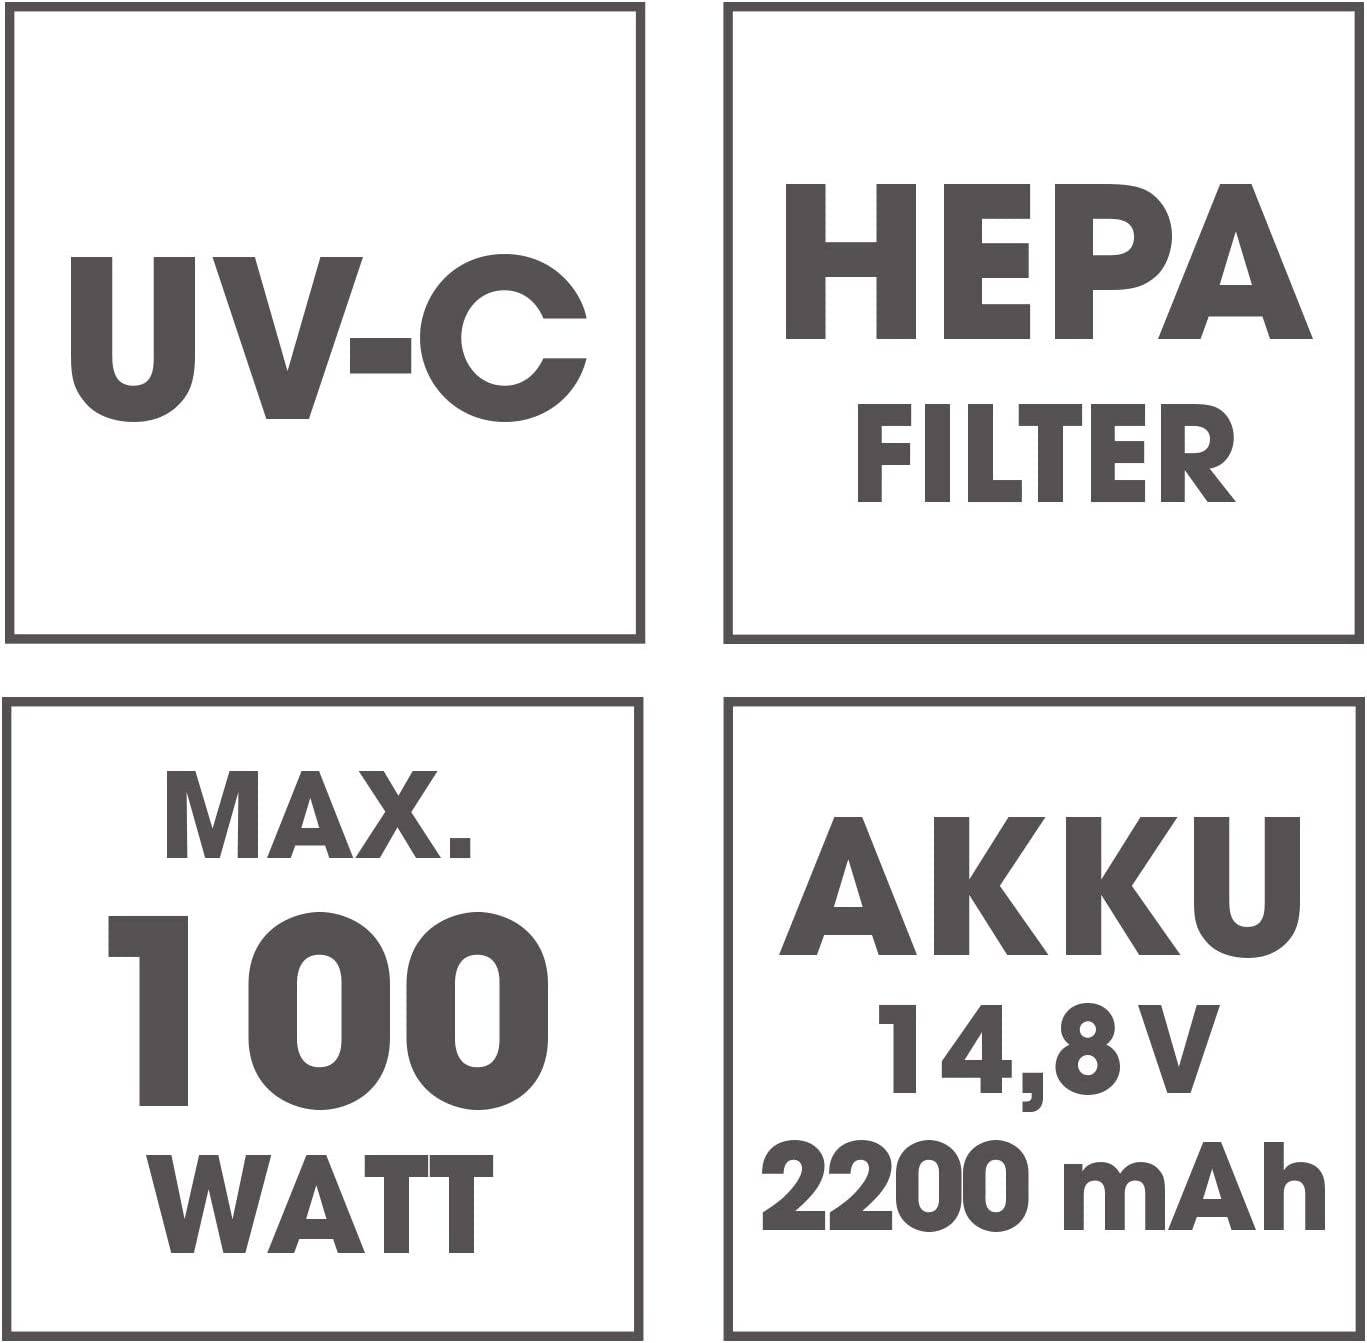 Aku bezsáčkový ruční vysavač na roztoče CleanMaxx  / 100 W / UV C světlo / bílá / červená